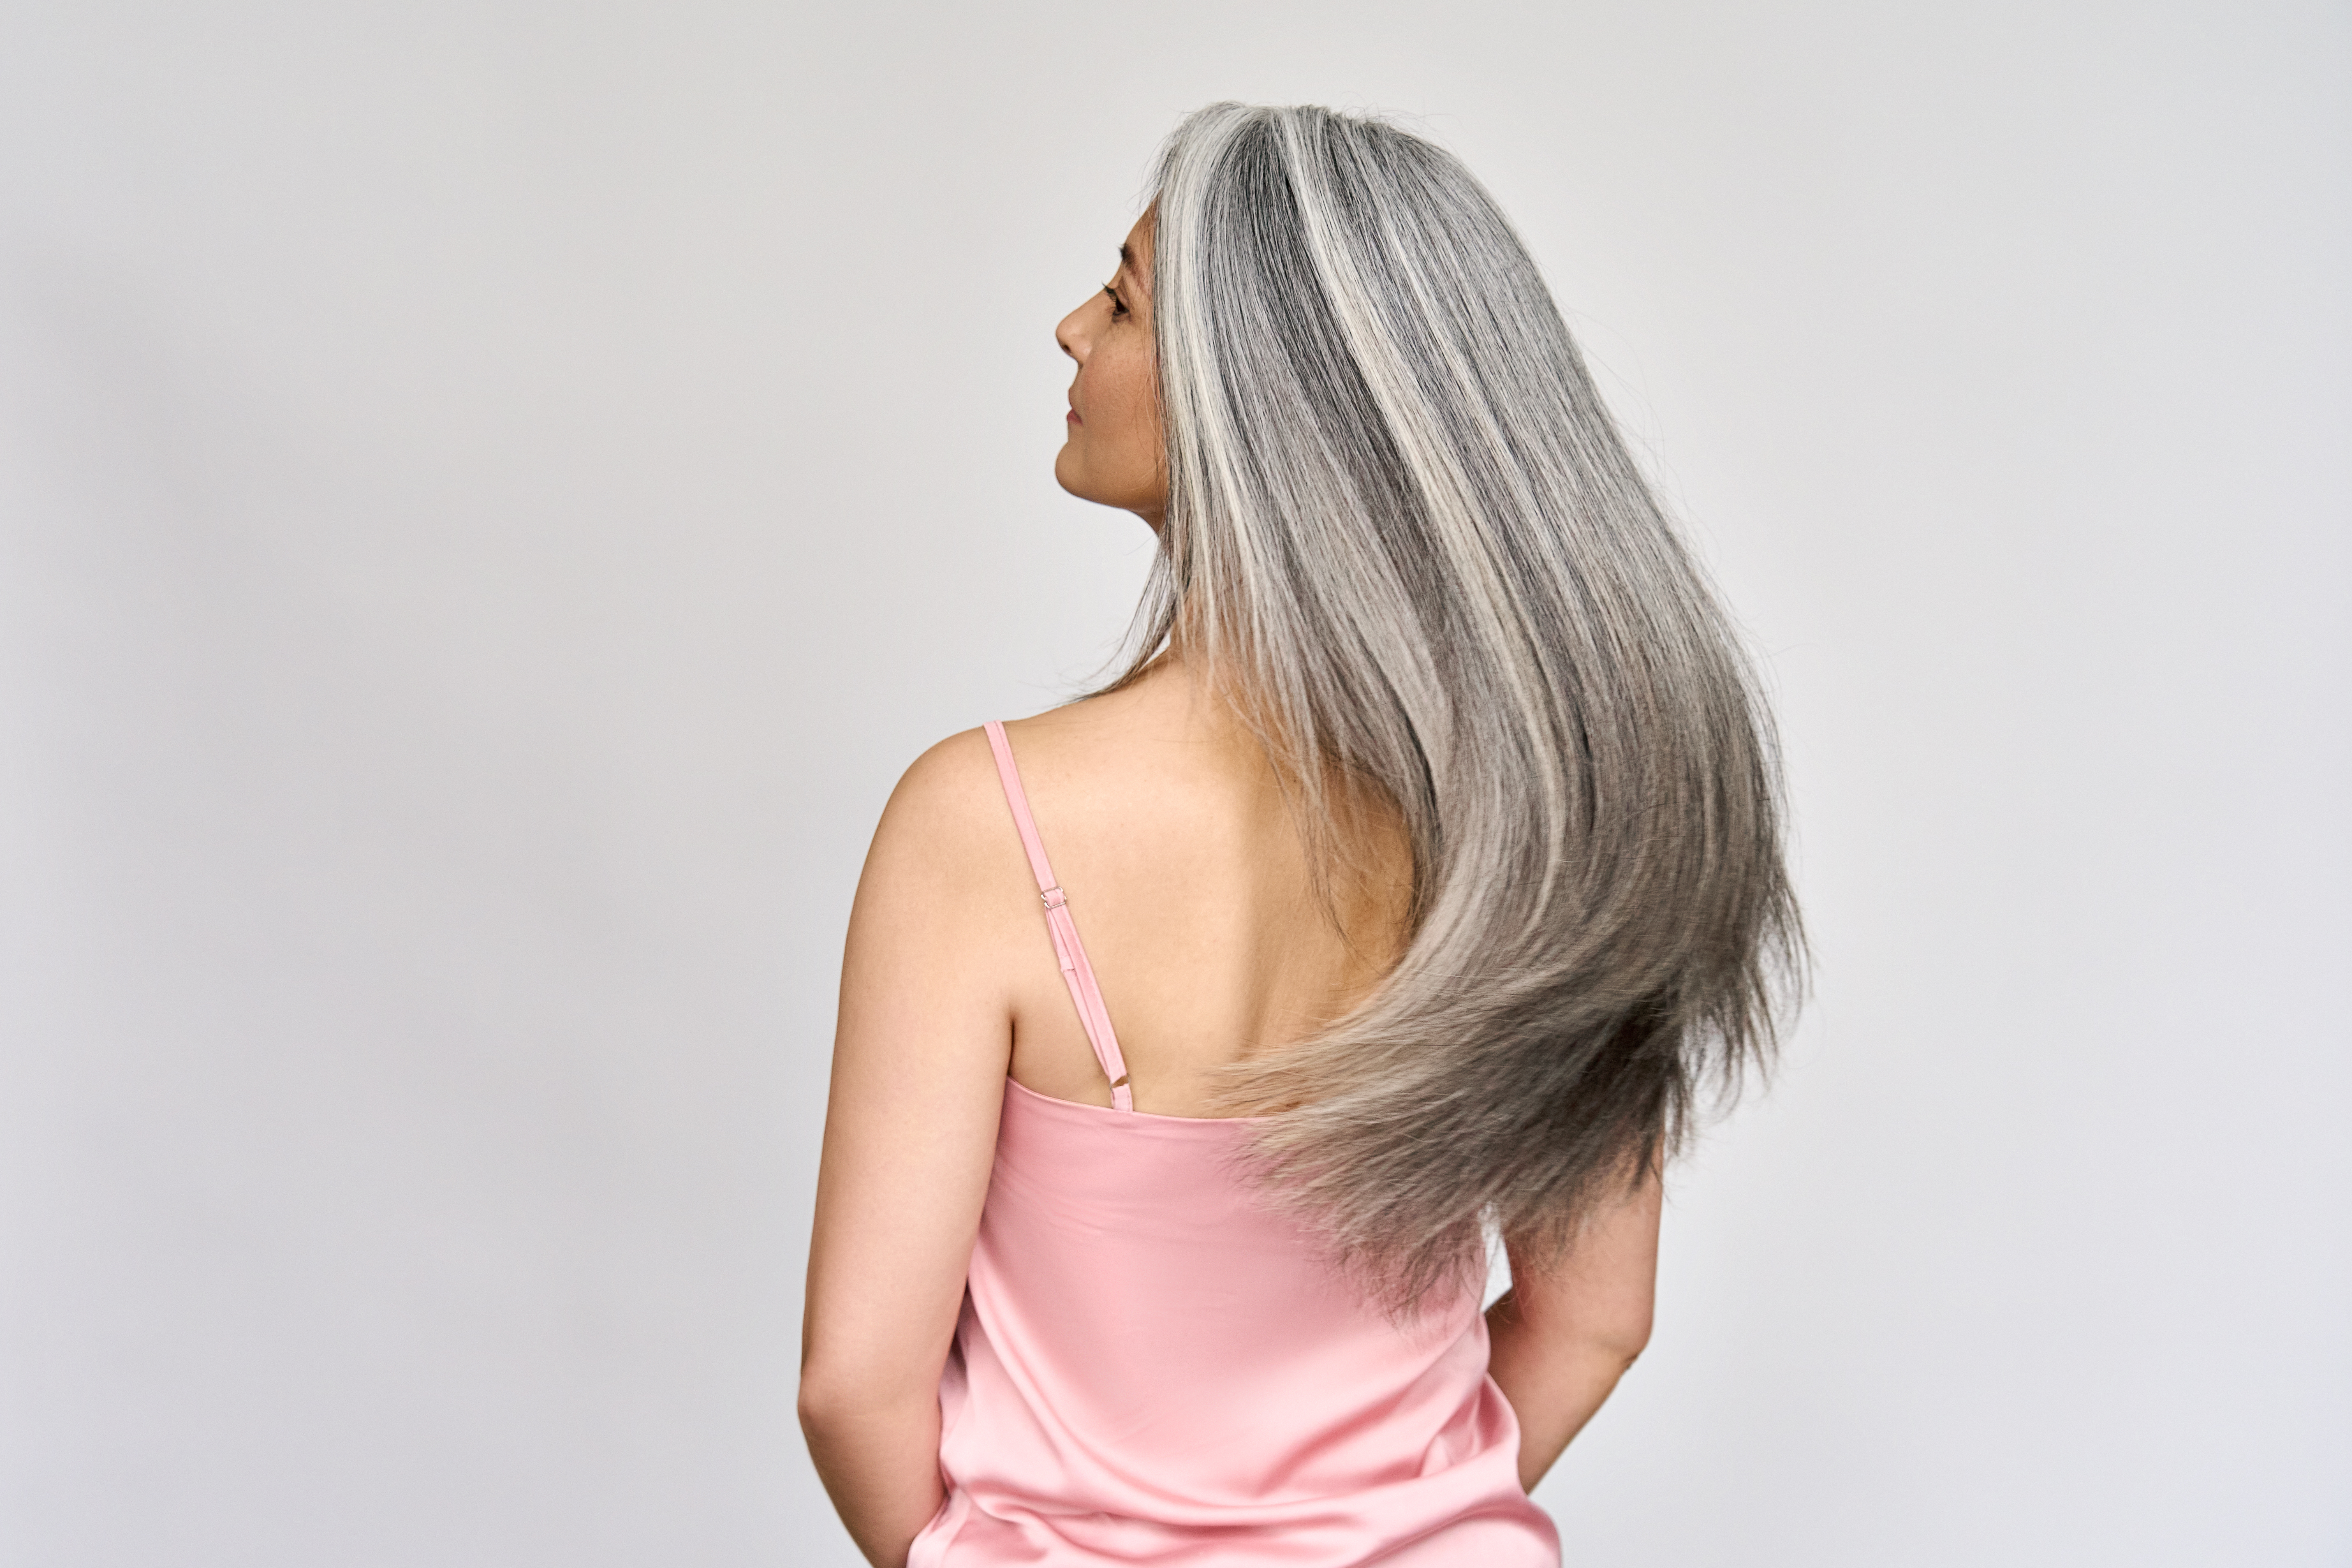 Una mujer con el pelo largo y canoso sacude la cabeza | Foto: Shutterstock